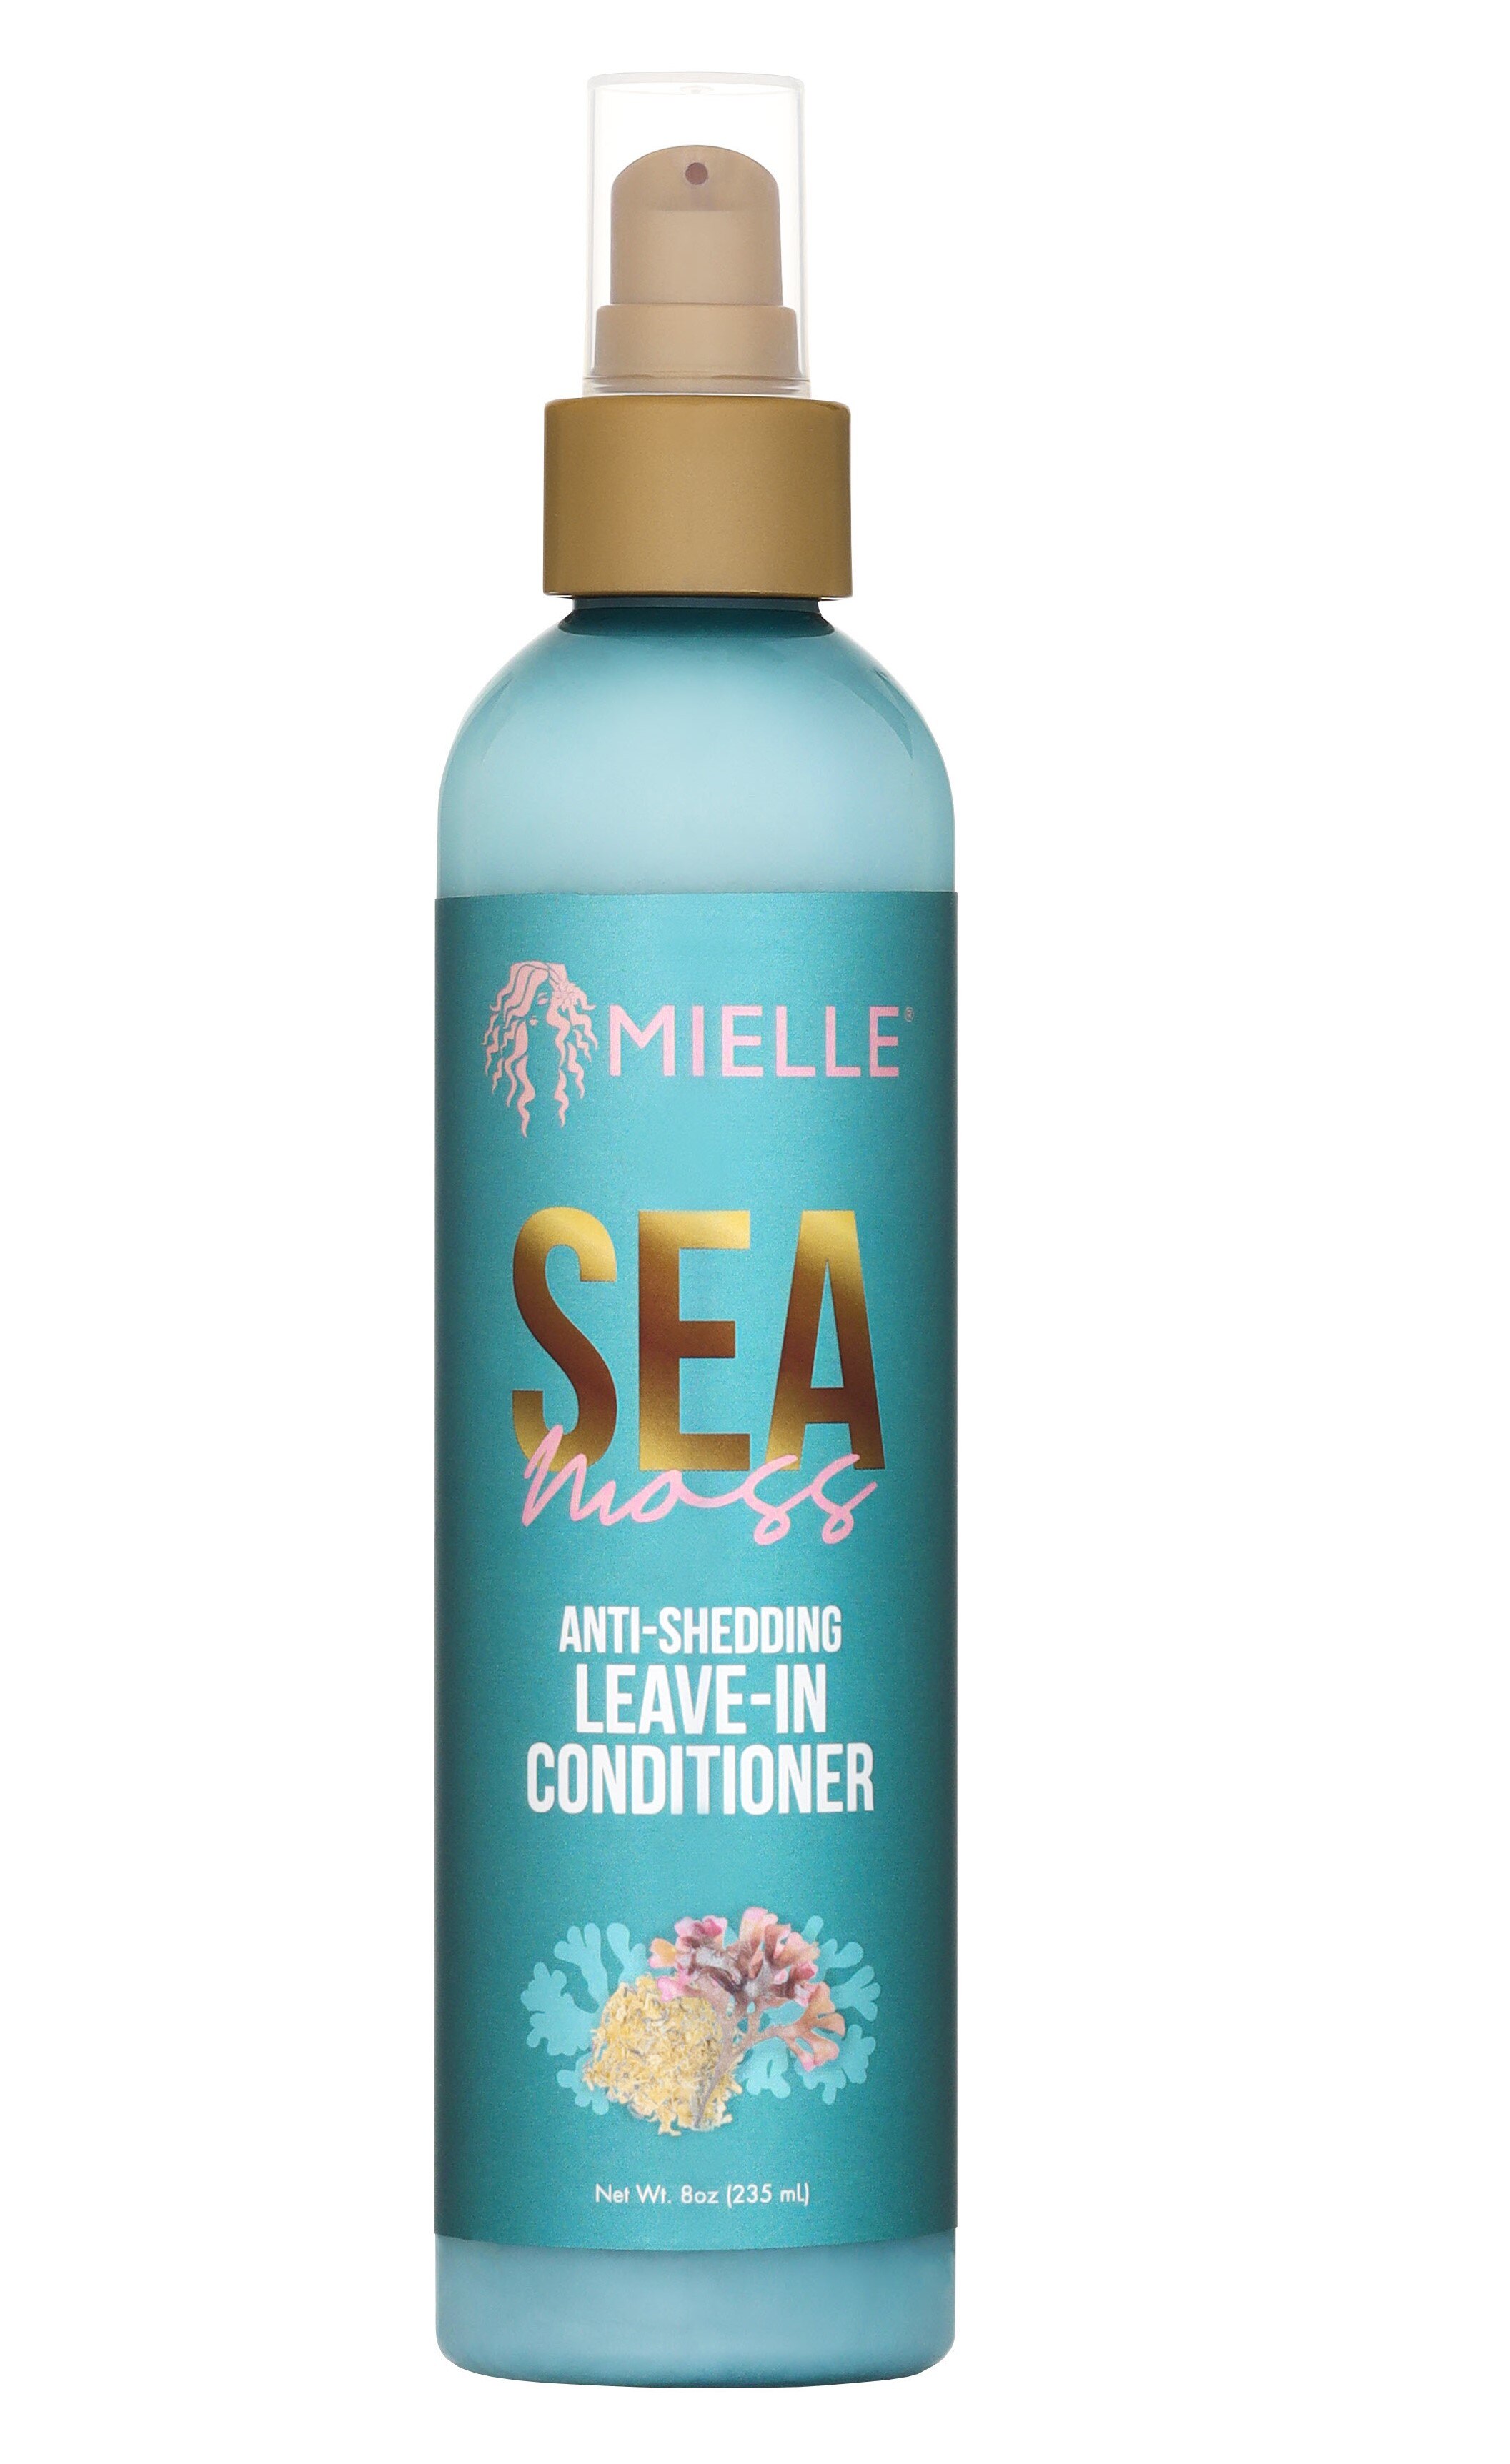 Mielle Sea Moss Anti Shedding Leave In Conditioner, 8 OZ